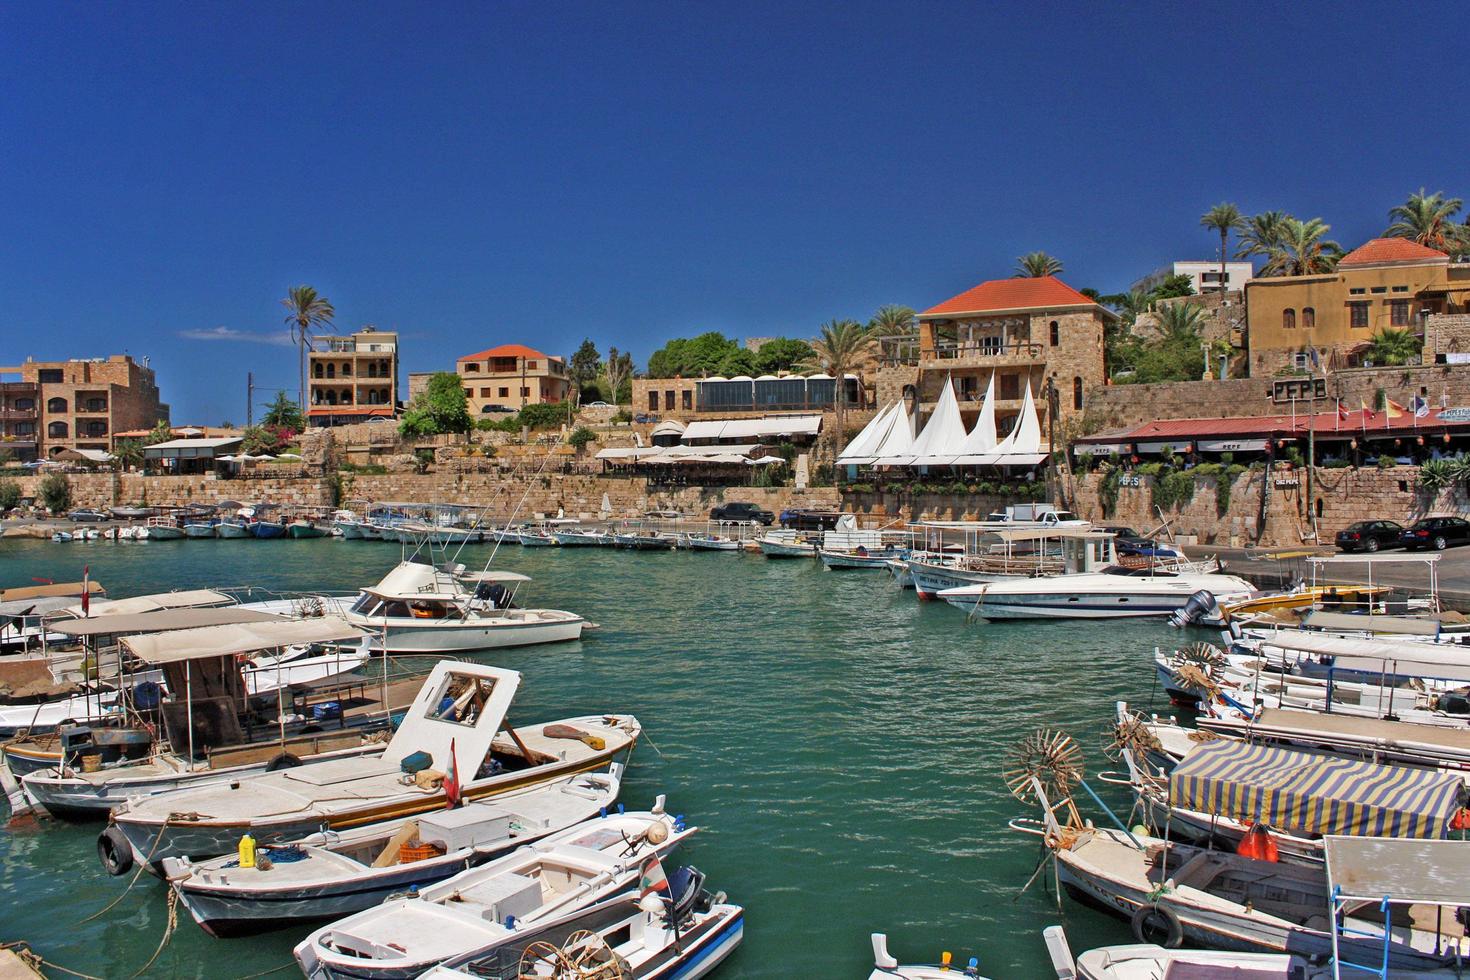 Byblos, Liban, 2019 - bateaux dans les eaux calmes du port de Byblos, Liban, par une journée ensoleillée photo